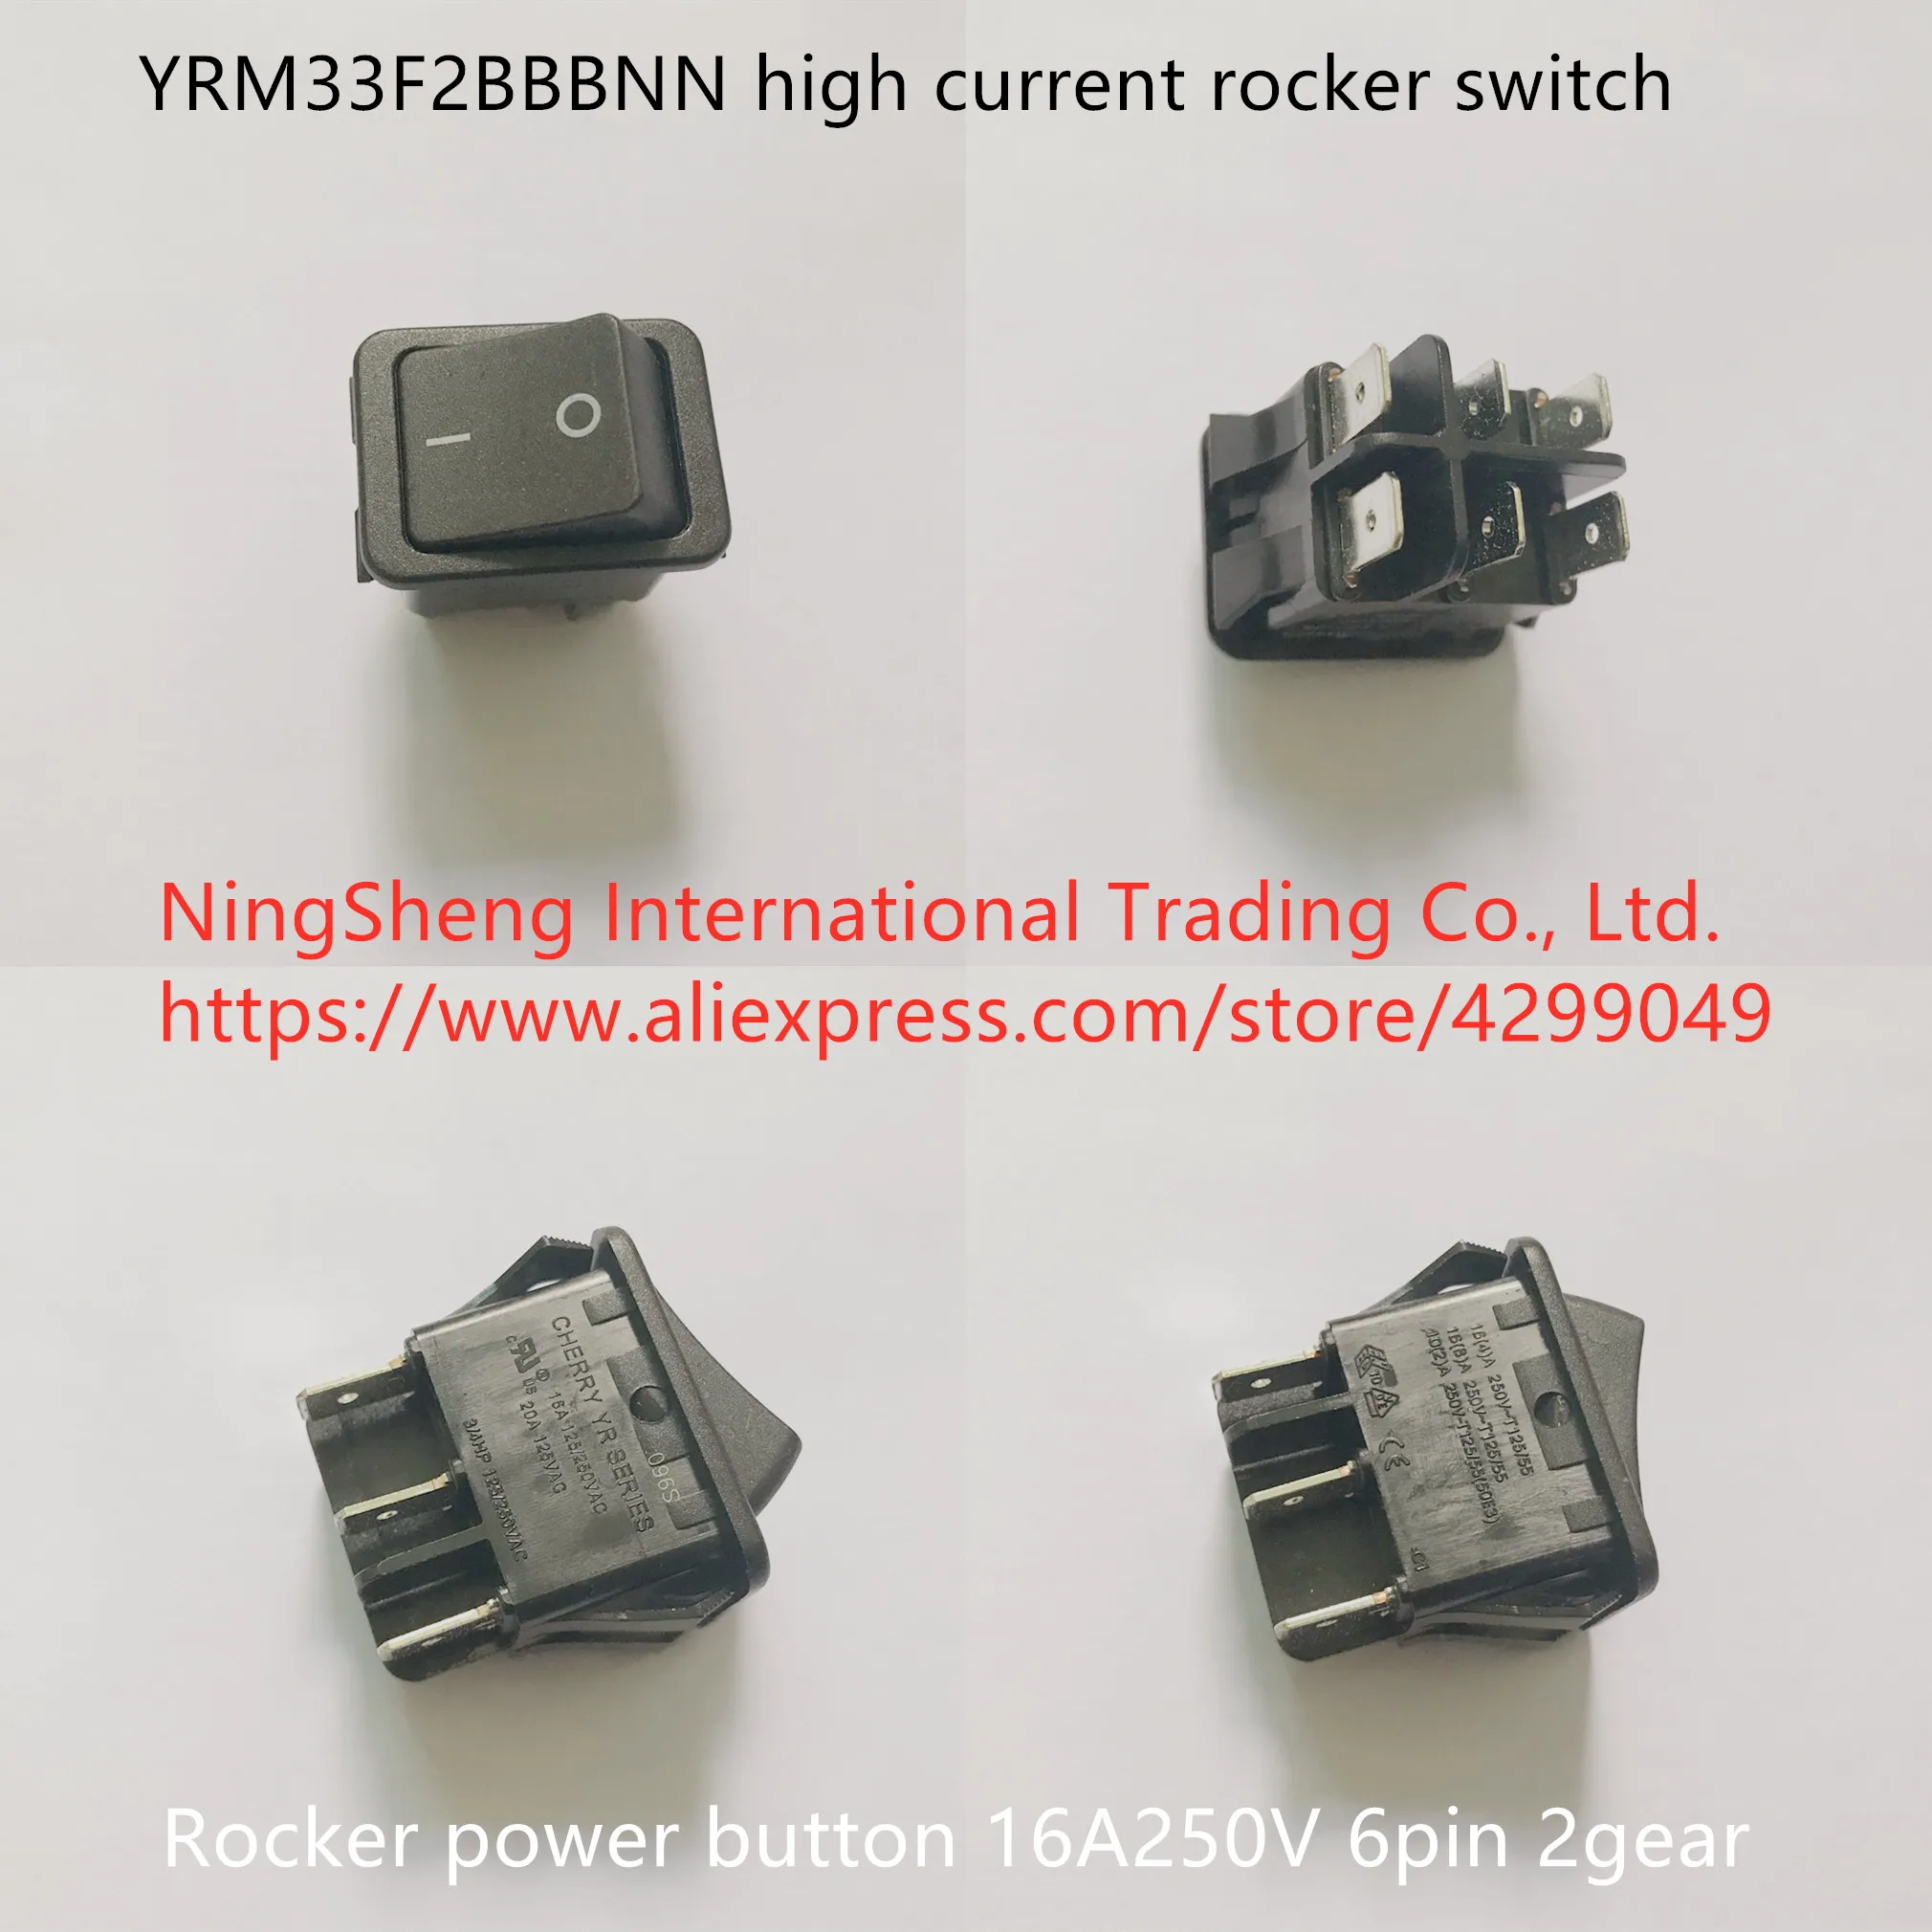 

Original new 100% YRM33F2BBBNN high current rocker switch 6pin 2gear rocker power button 16A250V